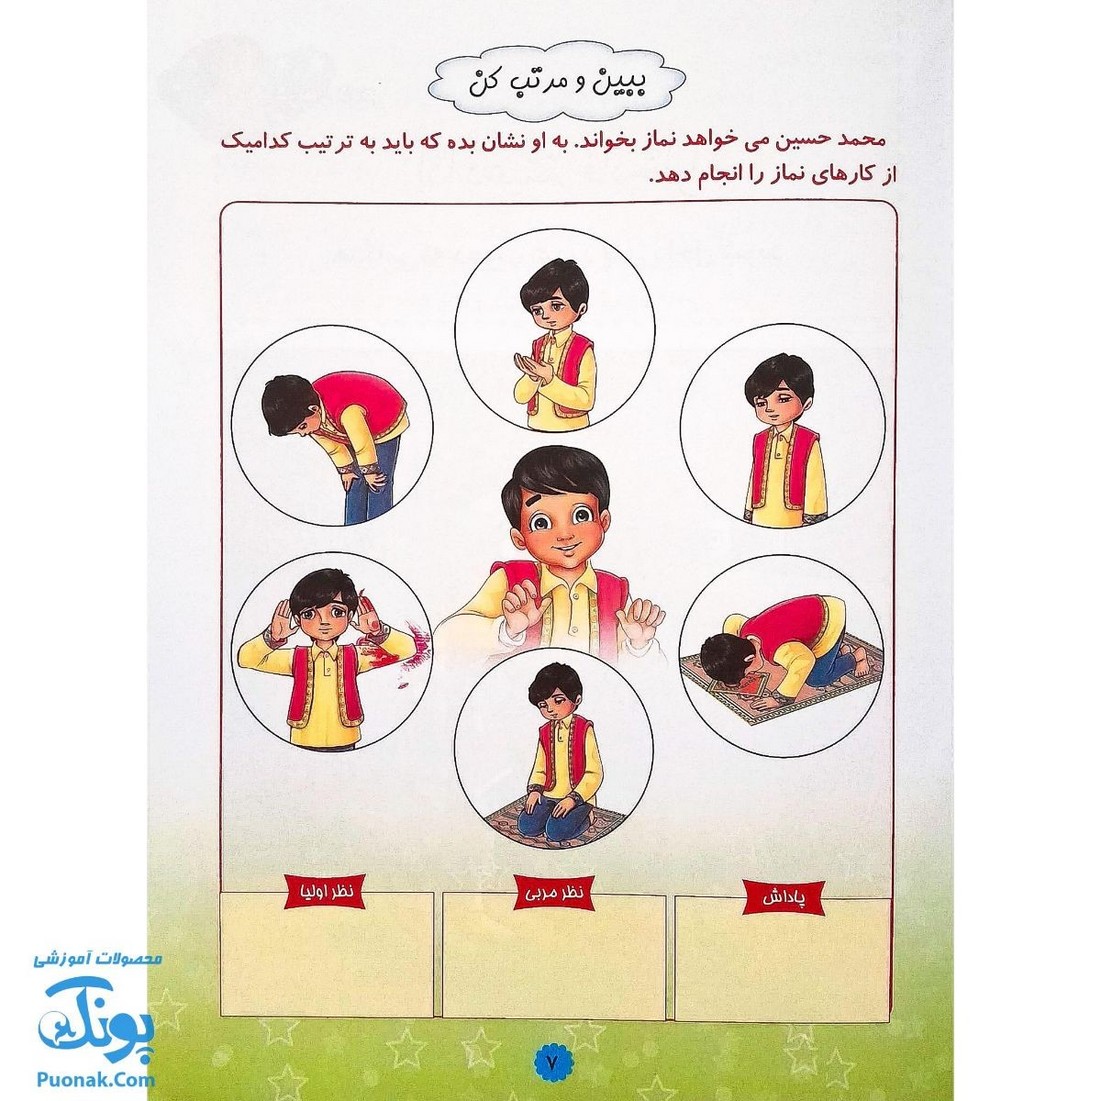 کتاب قرآن دوست بچه ها ۳ (مجموعه آموزشی گلستان کتاب های بچه های آسمان، ویژه آموزش قرآن کودکان پیش دبستان)